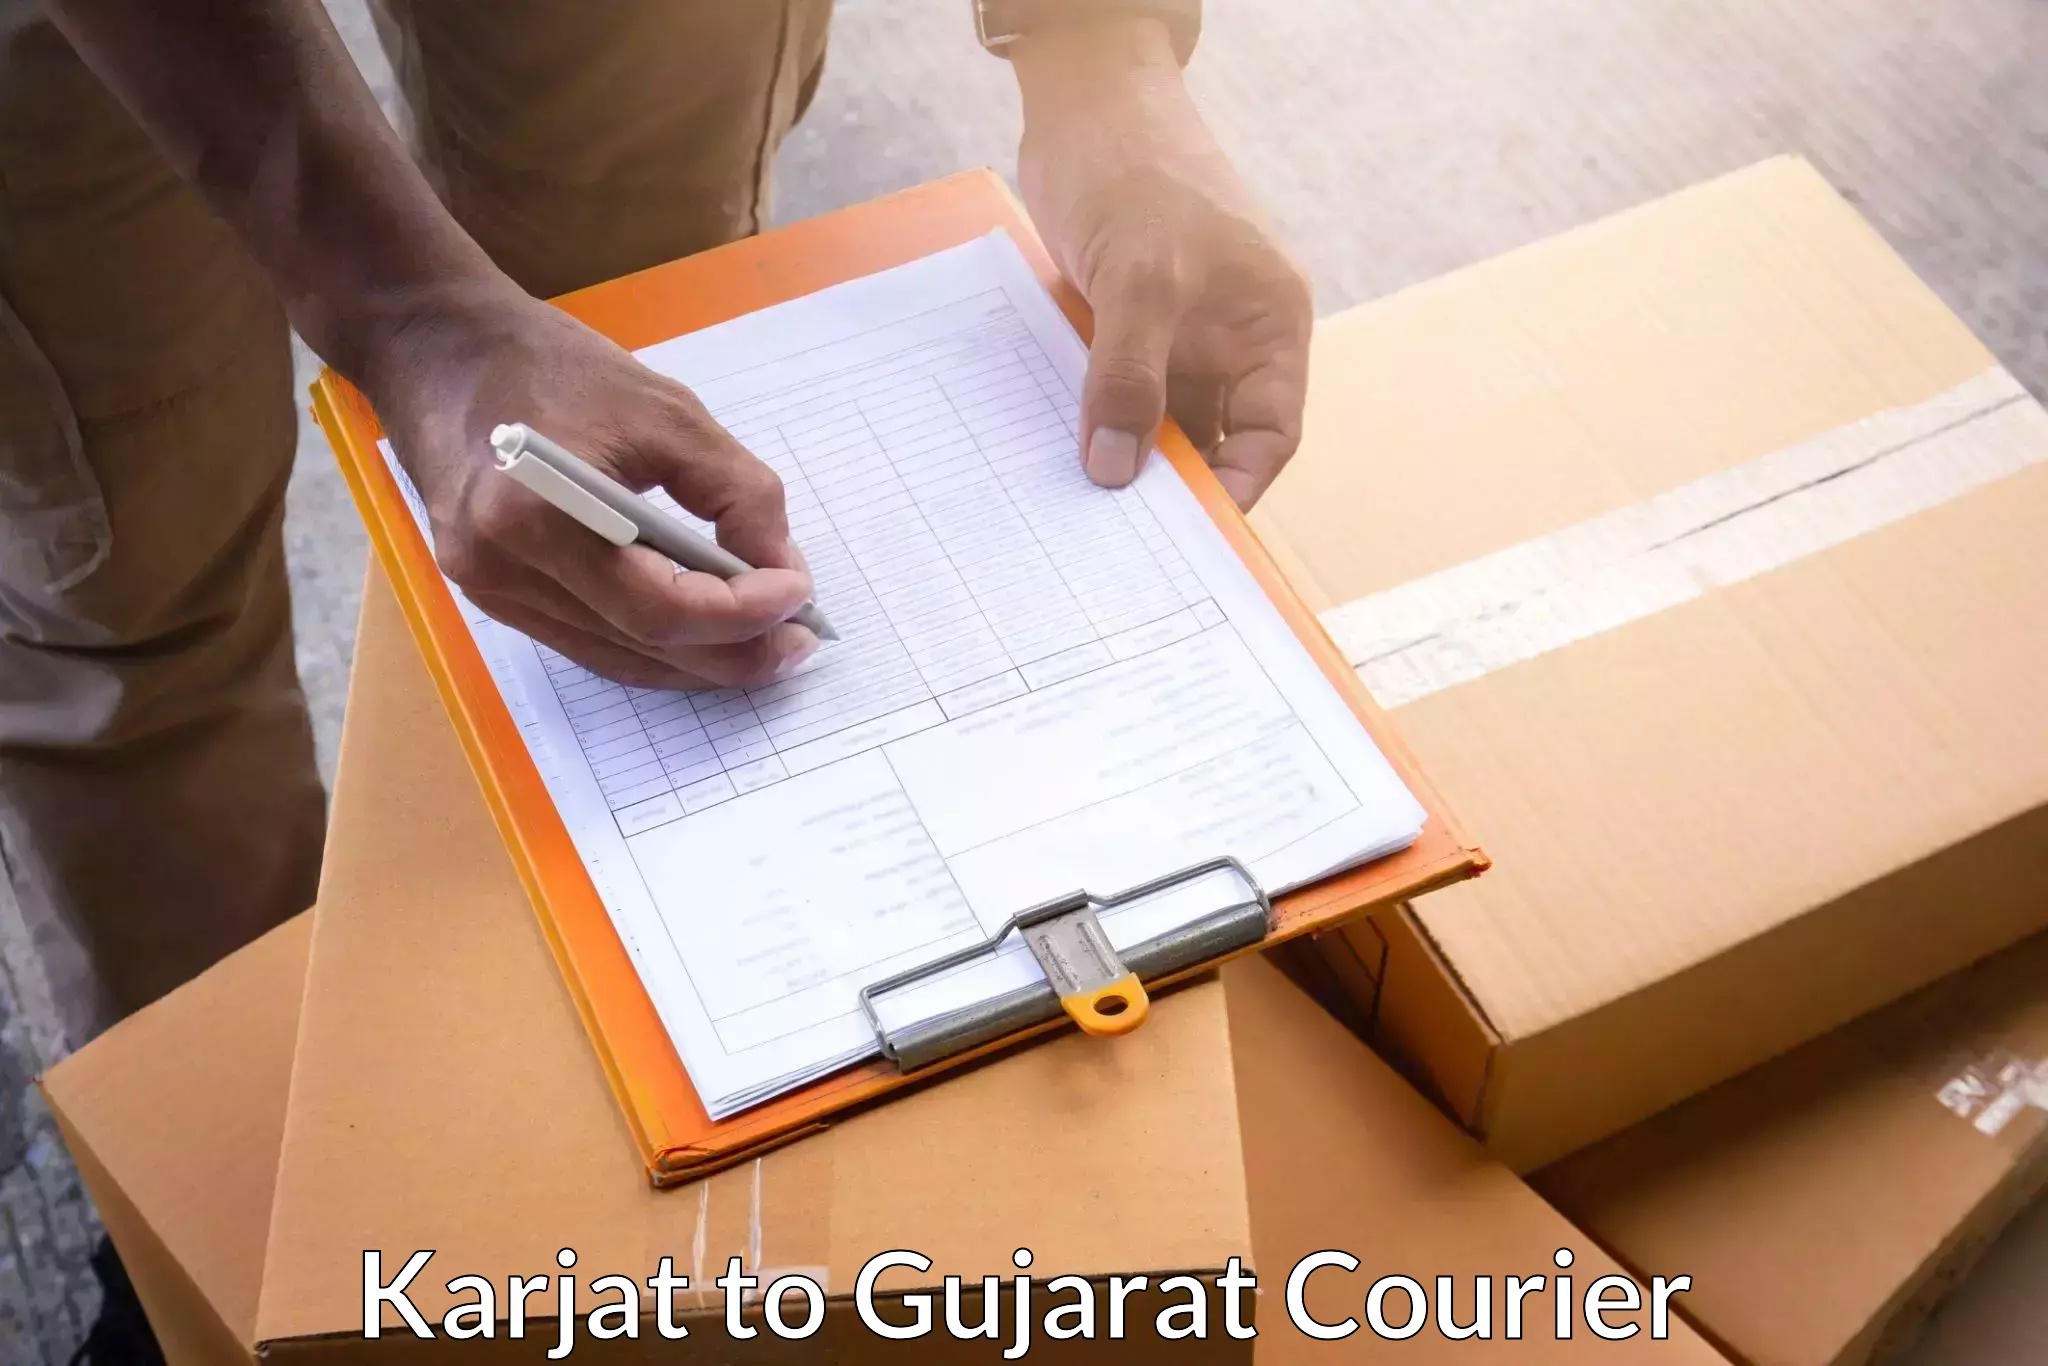 Fast-track shipping solutions Karjat to Vadnagar